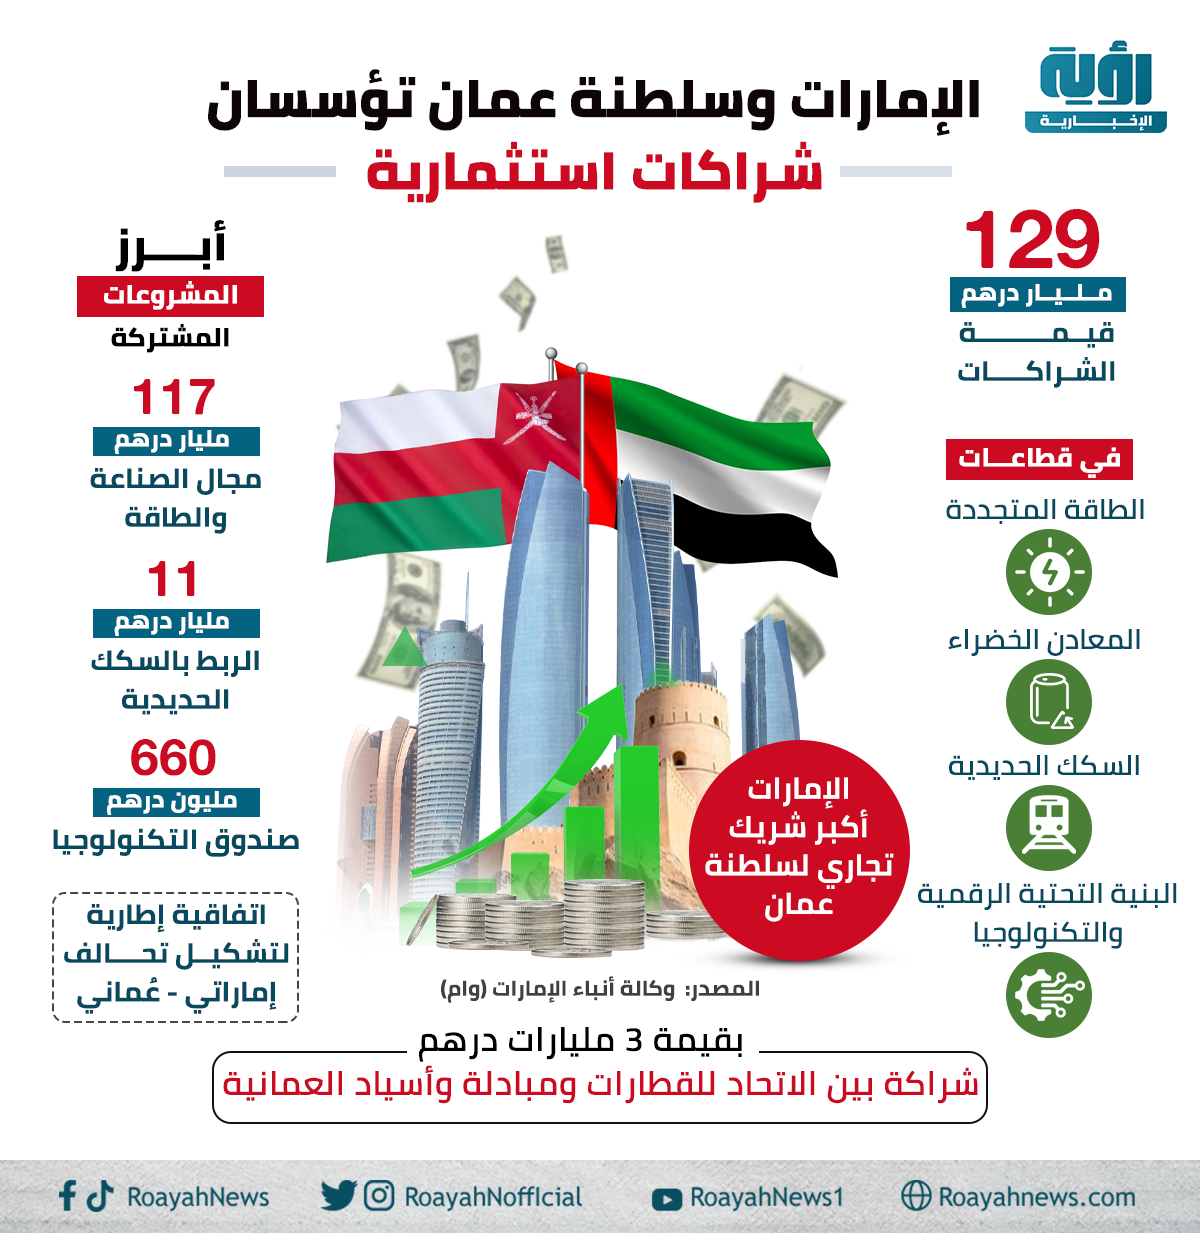 │ الإمارات وسلطنة عمان تؤسسان شراكات استثمارية